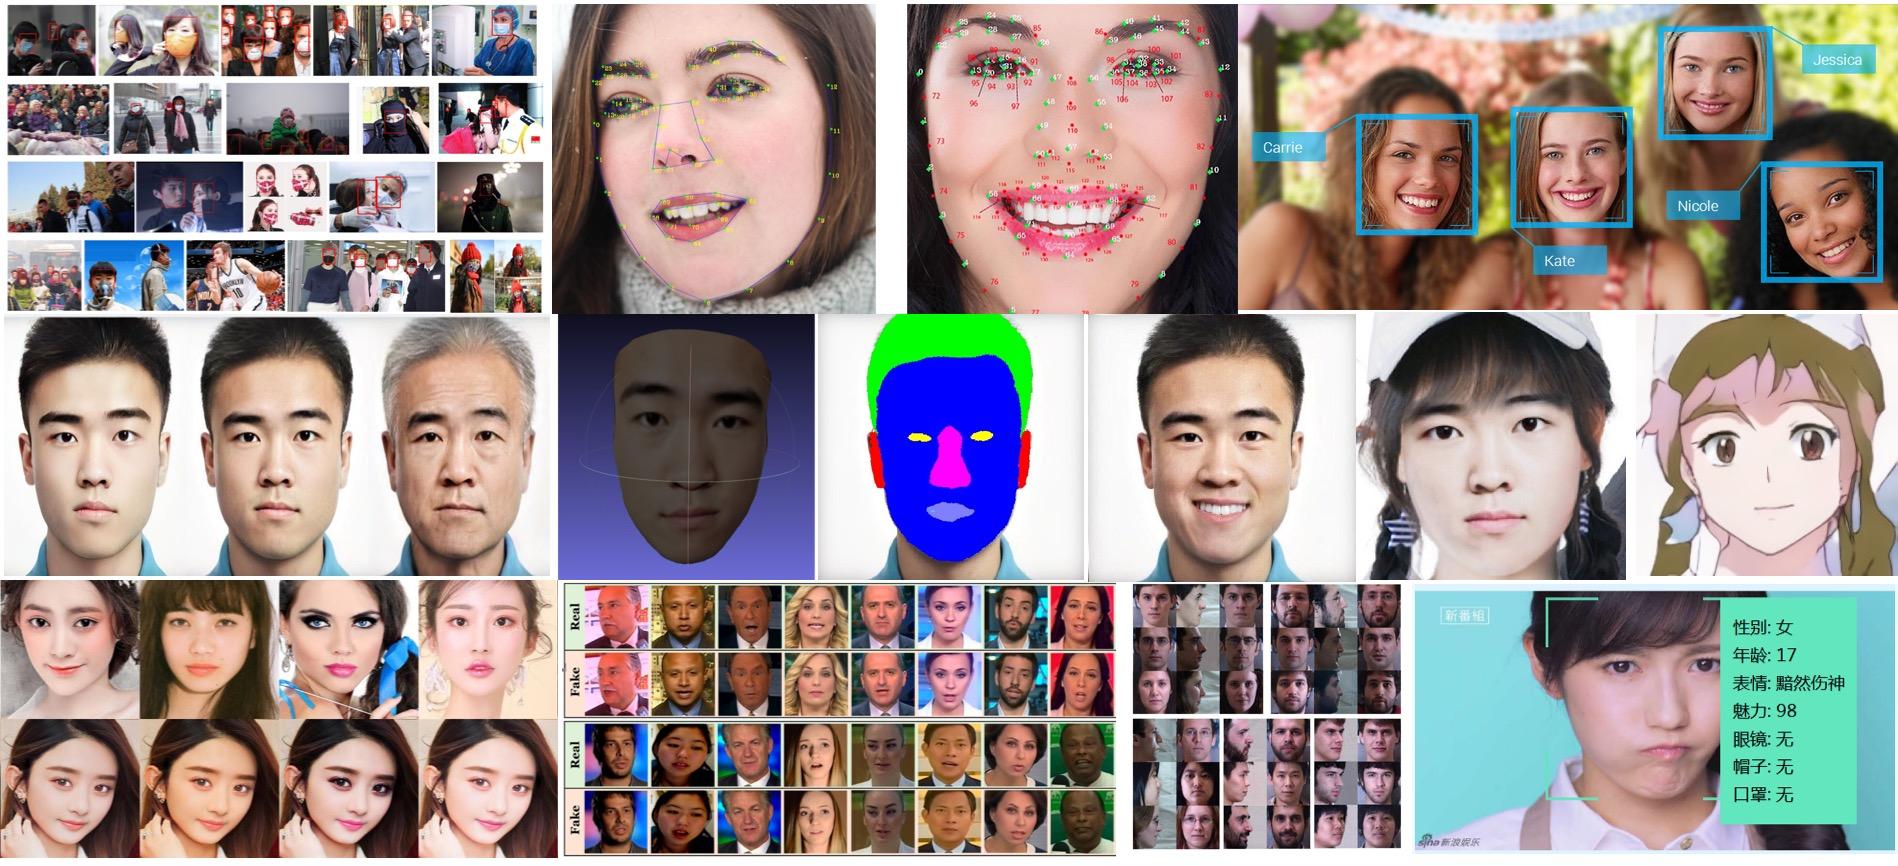 【技术综述】简介计算机视觉人脸图像的十几个大的应用方向，我们都可以学什么